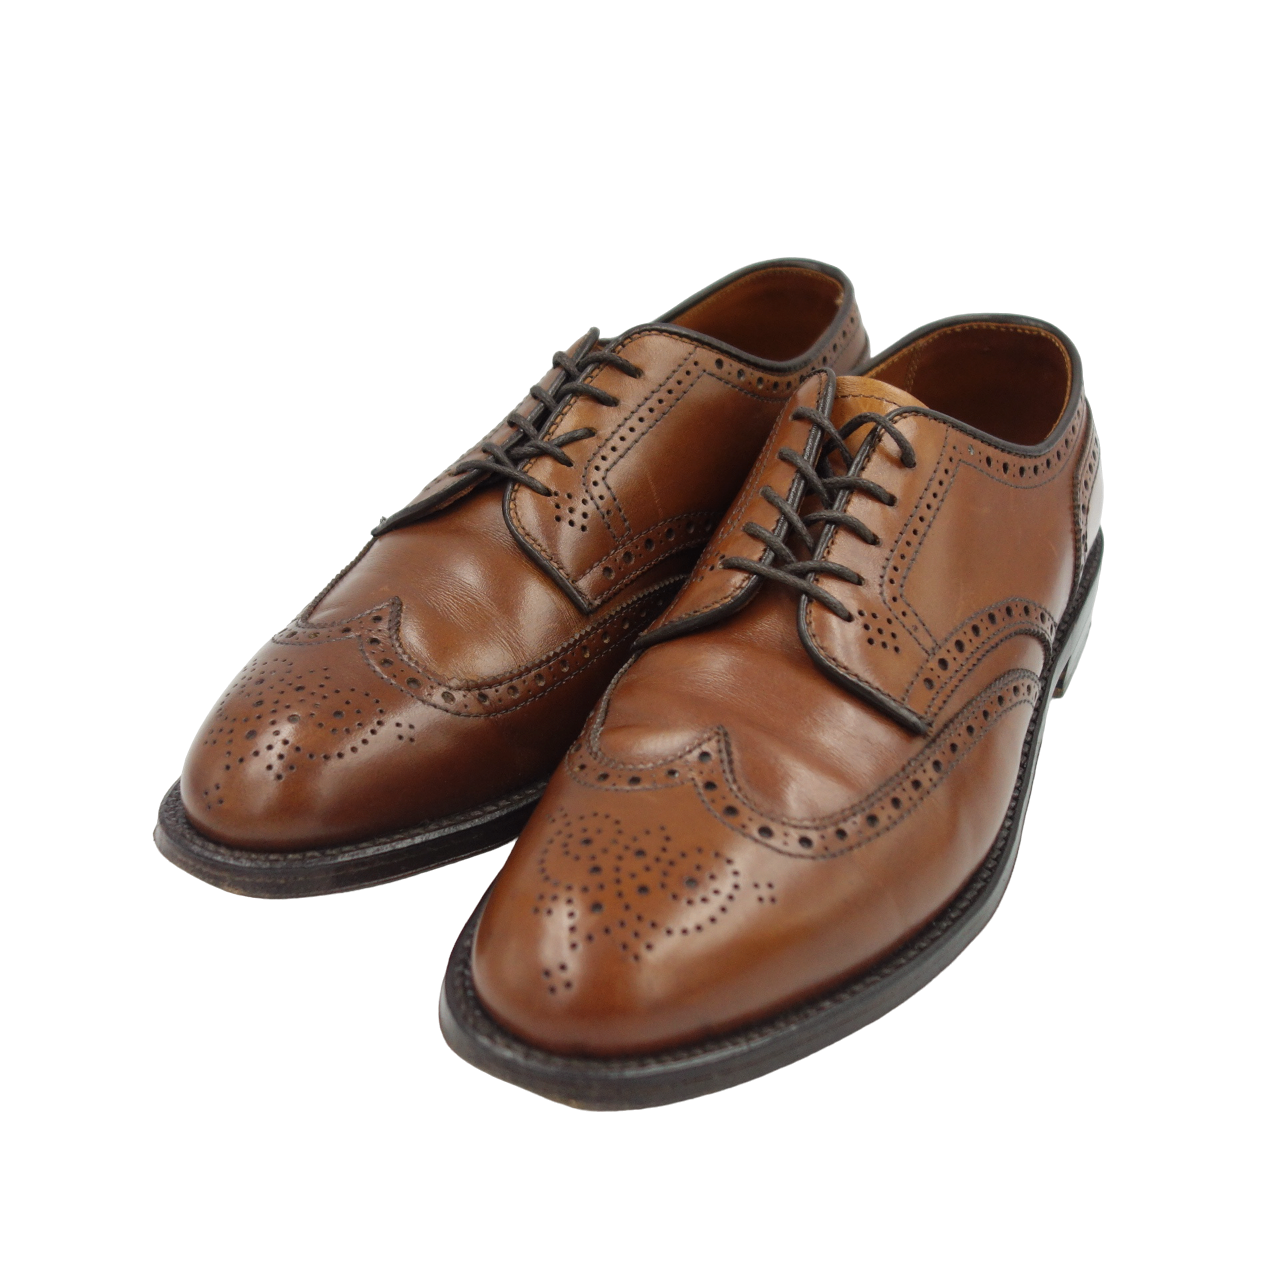 Good condition ◆ Alden leather shoes wing tip 966 calf Aberdeen last brown US7D ALDEN [LA] 